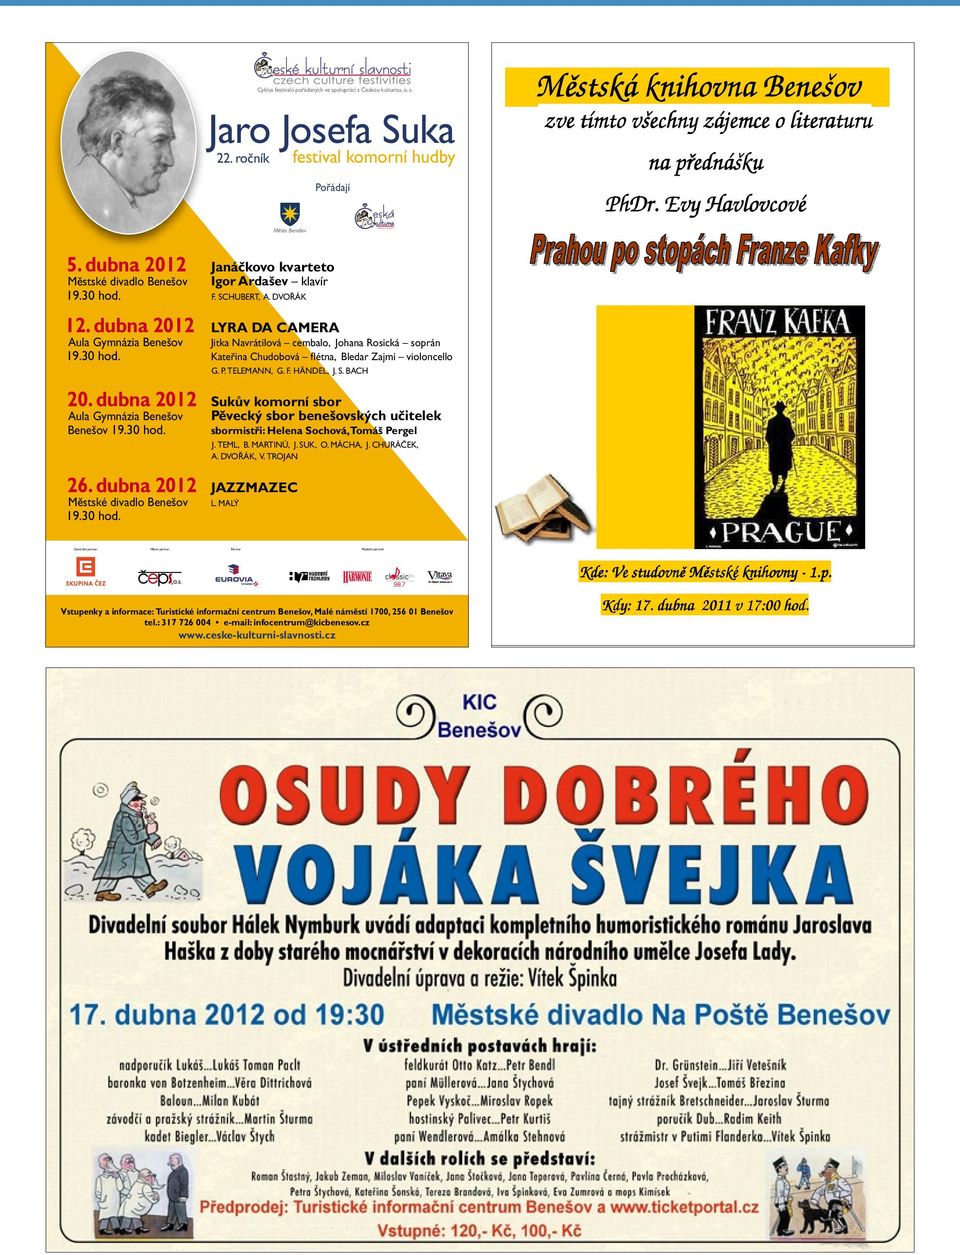 dubna 2012 Janáčkovo kvarteto Městské divadlo Benešov Igor Ardašev klavír 19.30 hod. F. SCHUBERT, A. DVOŘÁK 12.